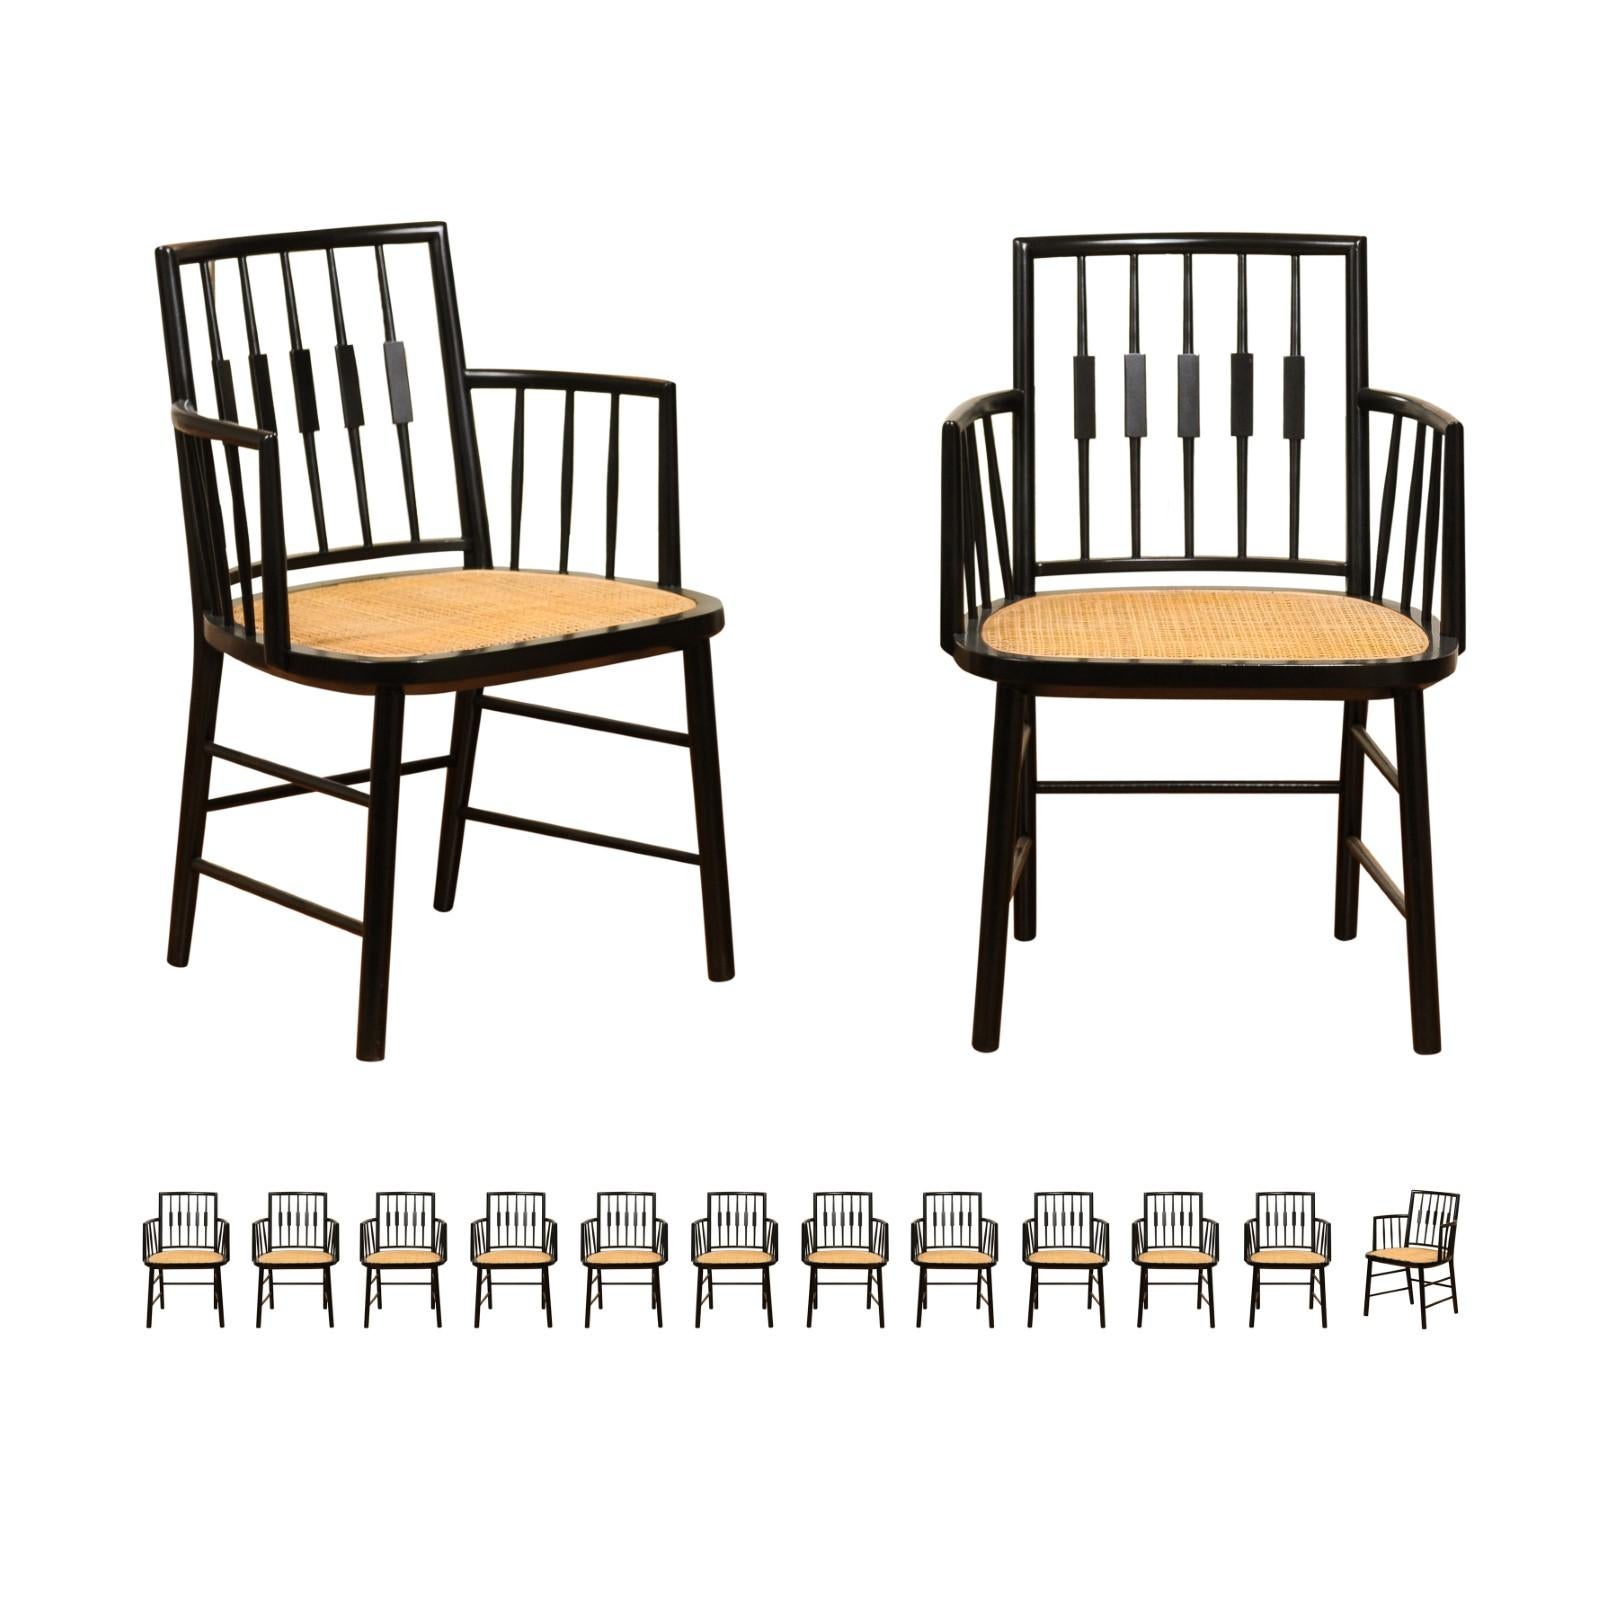 Ces magnifiques chaises de salle à manger sont expédiées telles qu'elles ont été photographiées par des professionnels et décrites dans le texte de l'annonce : Méticuleusement restaurées par des professionnels et prêtes à être installées. Il